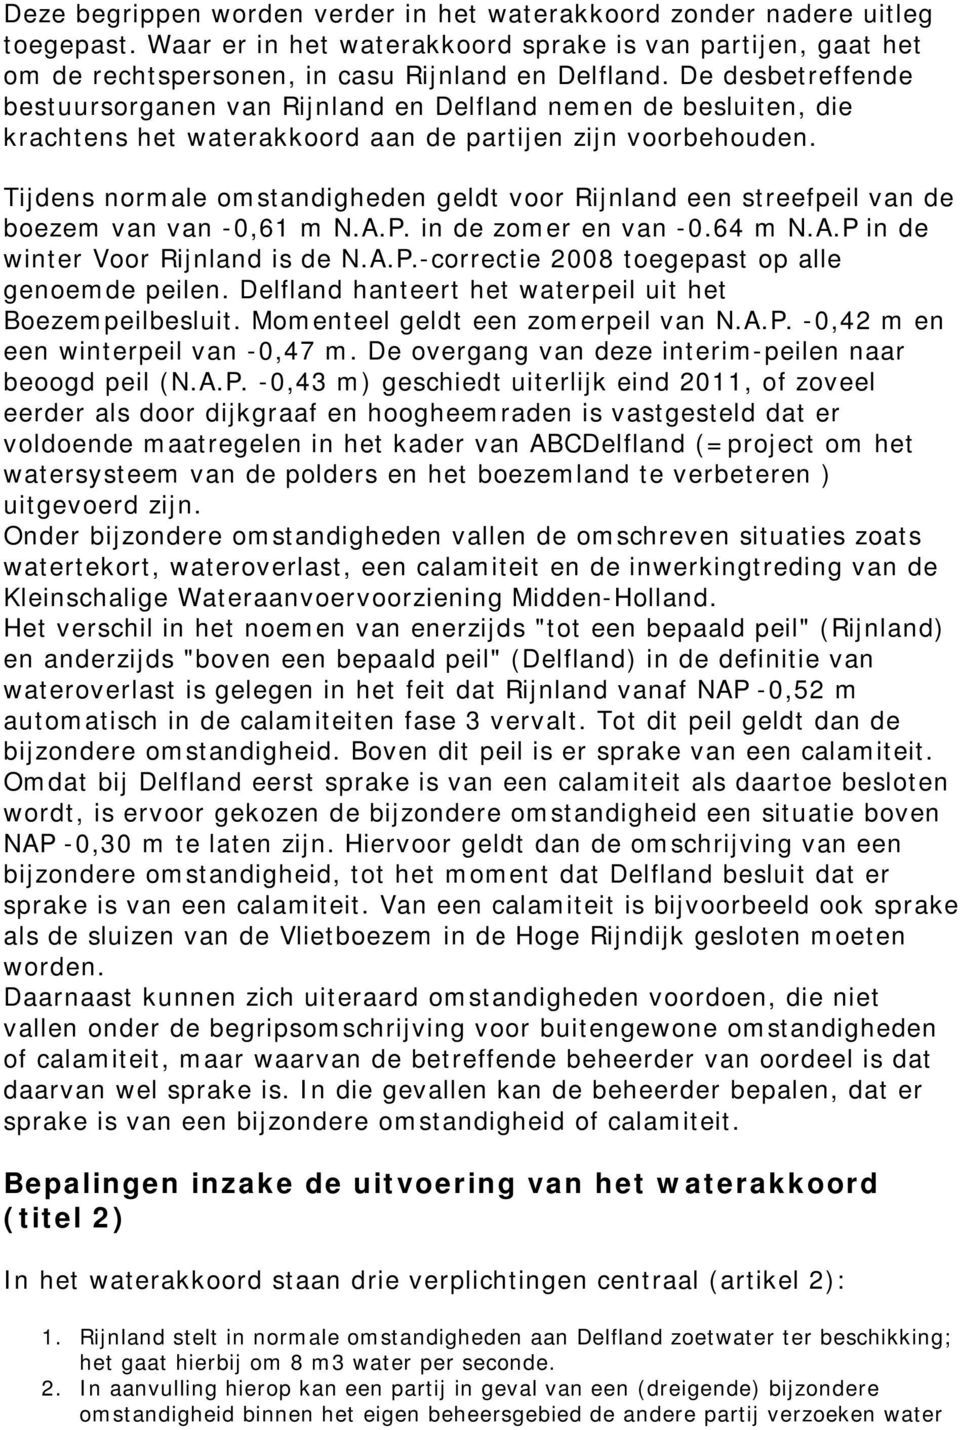 Tijdens normale omstandigheden geldt voor Rijnland een streefpeil van de boezem van van -0,61 m N.A.P. in de zomer en van -0.64 m N.A.P in de winter Voor Rijnland is de N.A.P.-correctie 2008 toegepast op alle genoemde peilen.